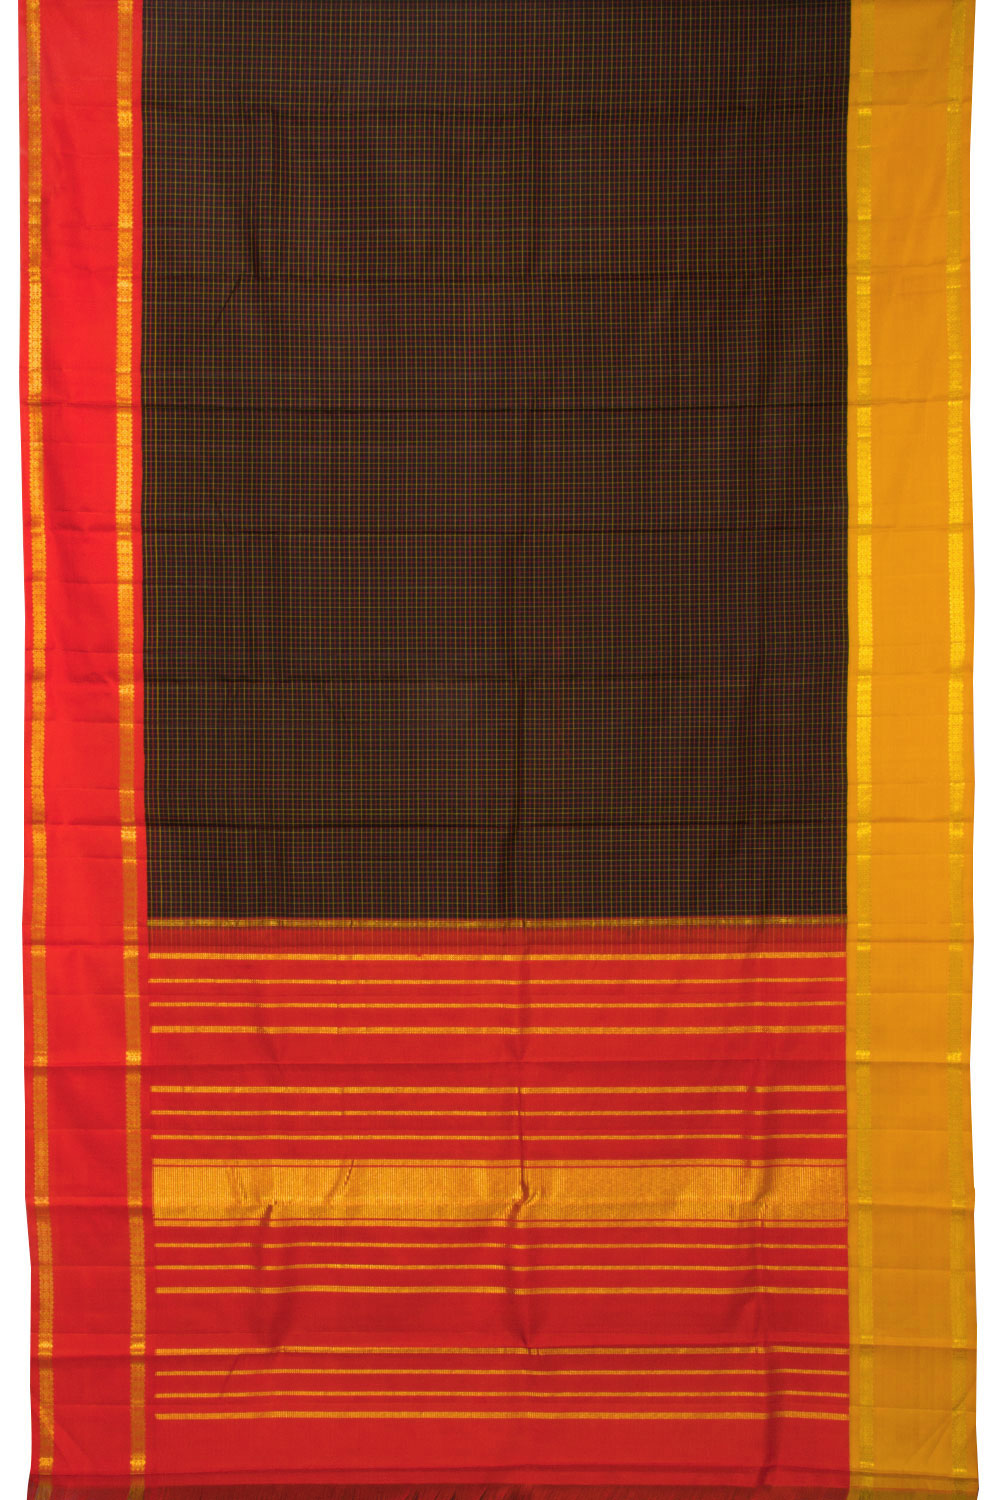 Brown Bridal Handloom Kanjivaram Silk Saree - Avishya